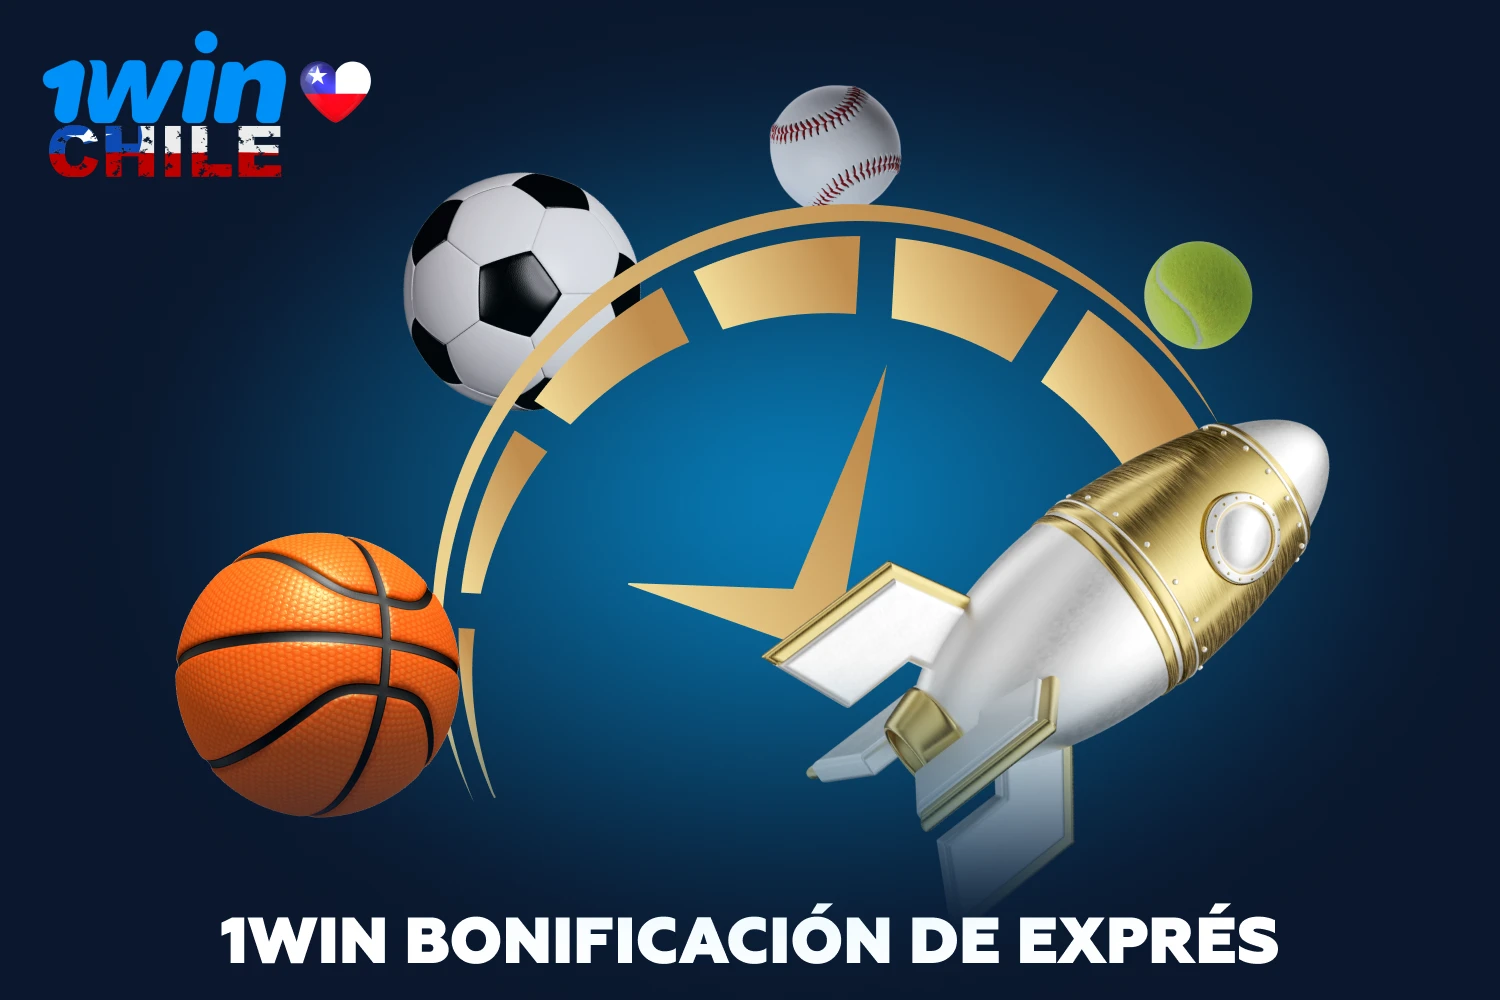 Los jugadores chilenos pueden obtener beneficios extra con el bono deportivo de 1win realizando apuestas exprés en eventos 5-11+